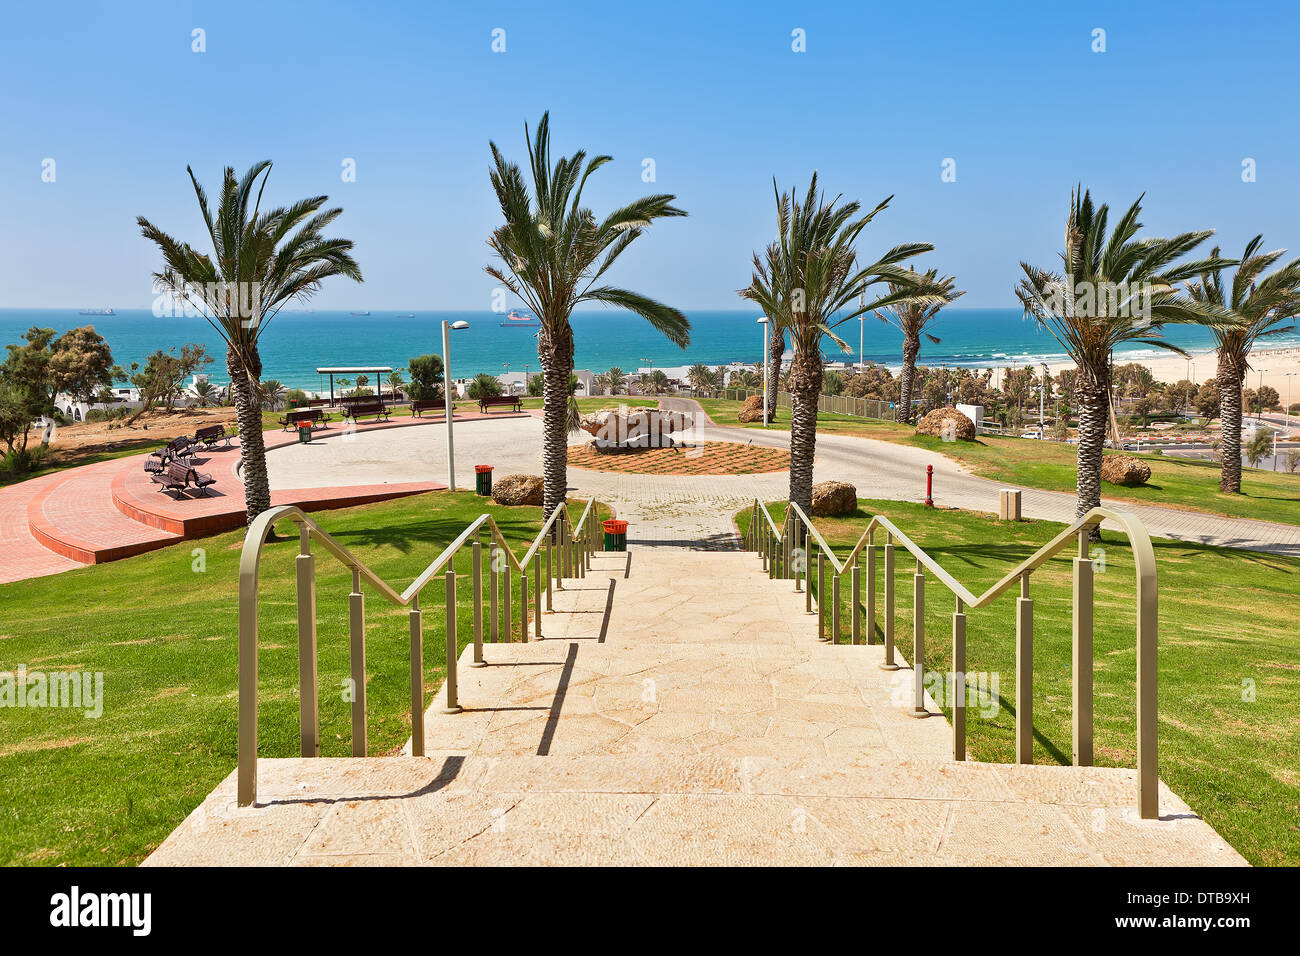 Escaliers en pierre dans parc urbain avec vue magnifique sur la mer Méditerranée à Ashdod, Israël. Banque D'Images